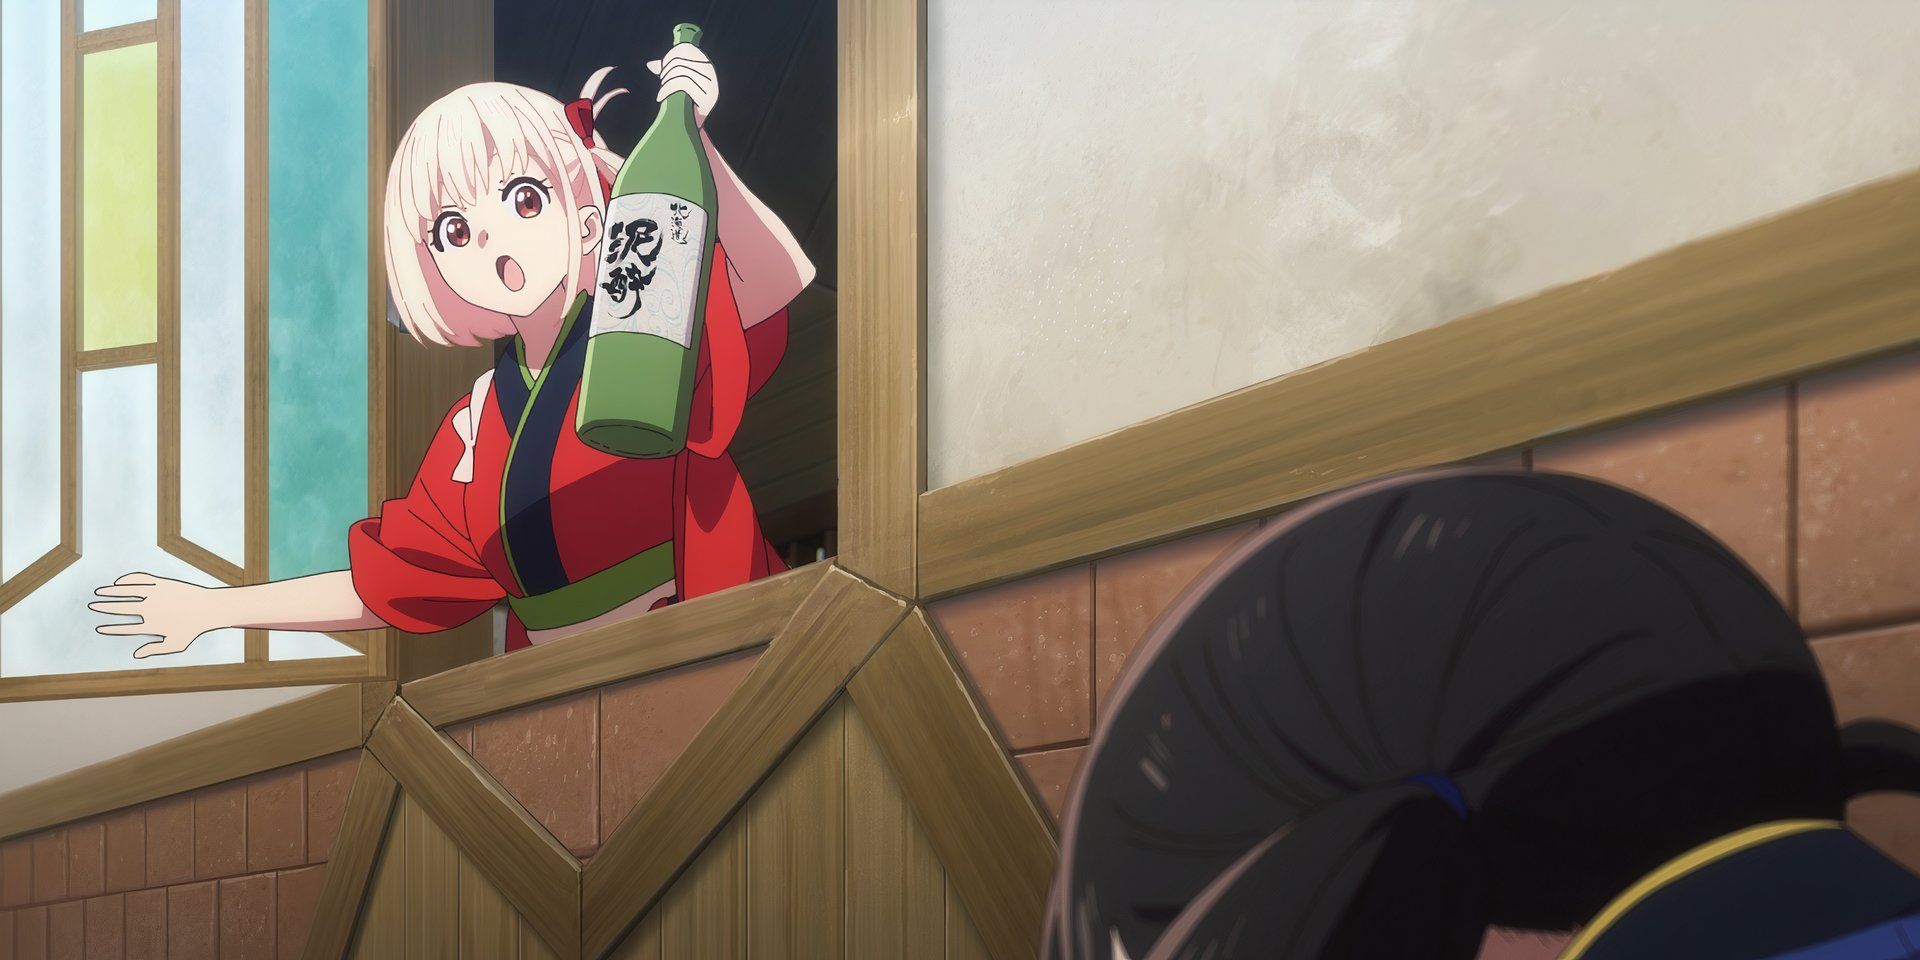 Chisato em seu uniforme de garçonete se inclina para fora de uma janela, enquanto segura uma garrafa de saquê. No primeiro plano, a parte de trás da cabeça de Takina é vista, enquanto ela se agacha e olha para o chão.